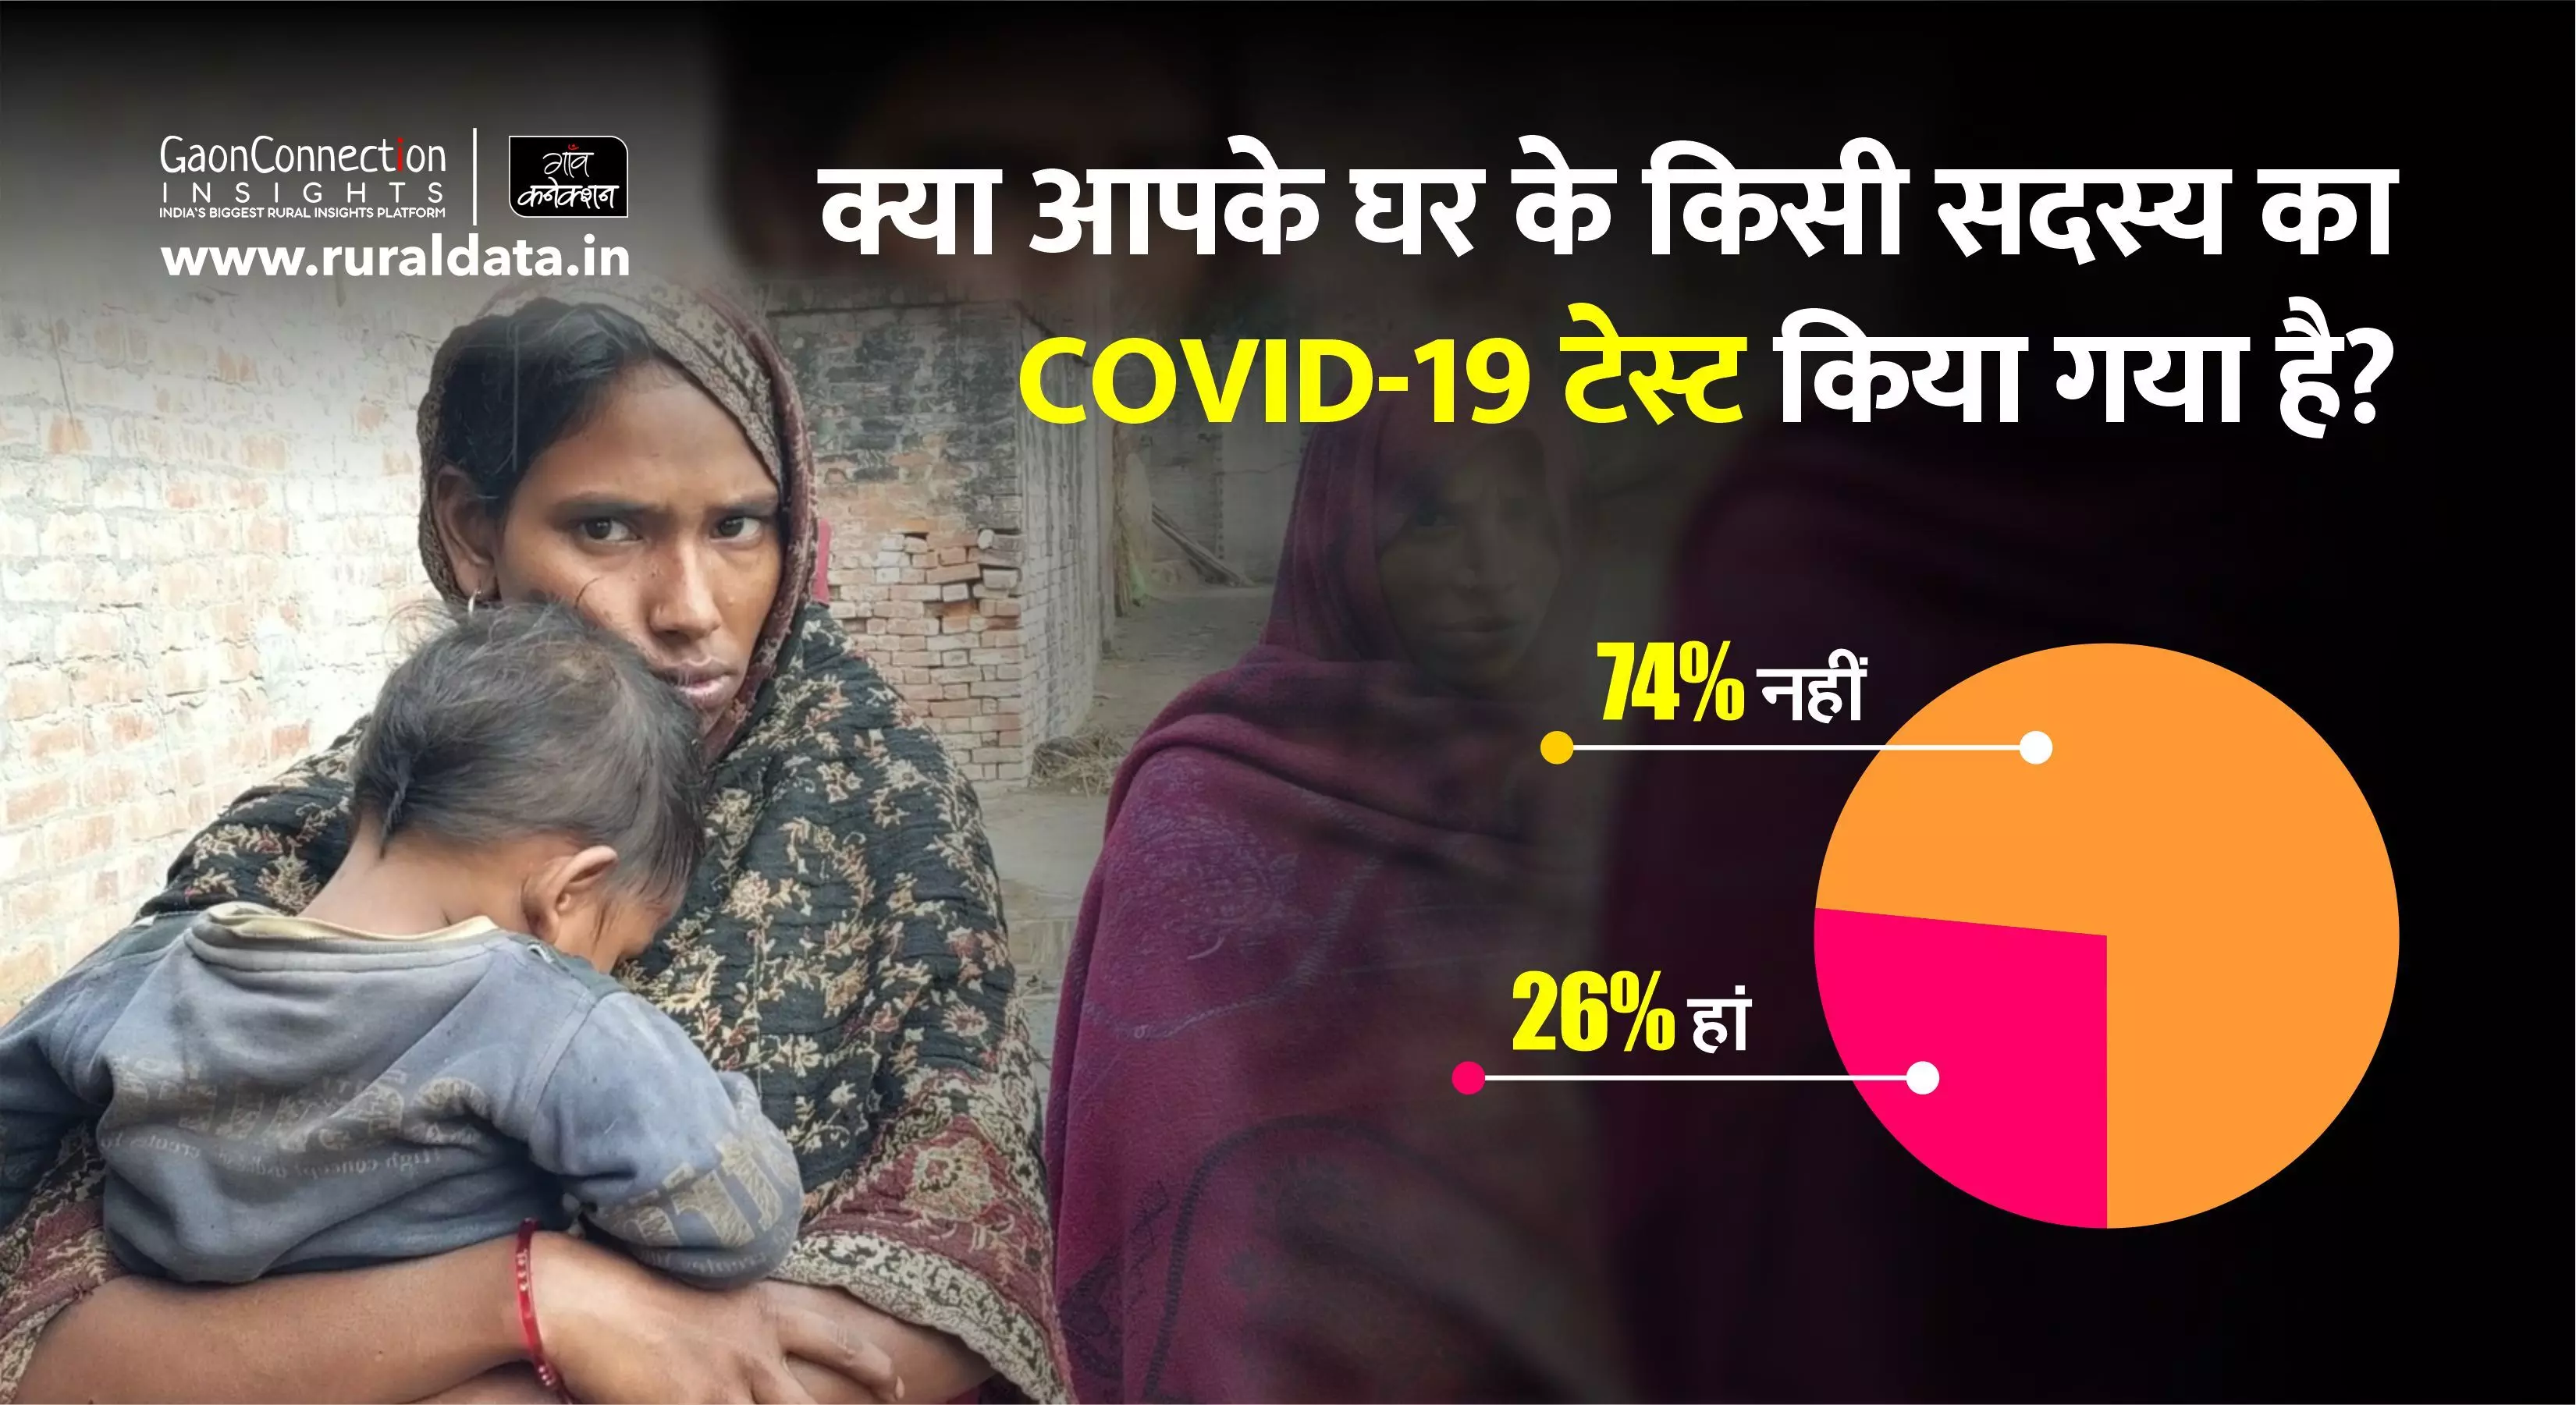 गांव कनेक्शन सर्वे: हर चौथे ग्रामीण परिवार में हुआ किसी न किसी का कोविड-टेस्ट, 15 फीसदी मिले कोरोना पॉजिटिव